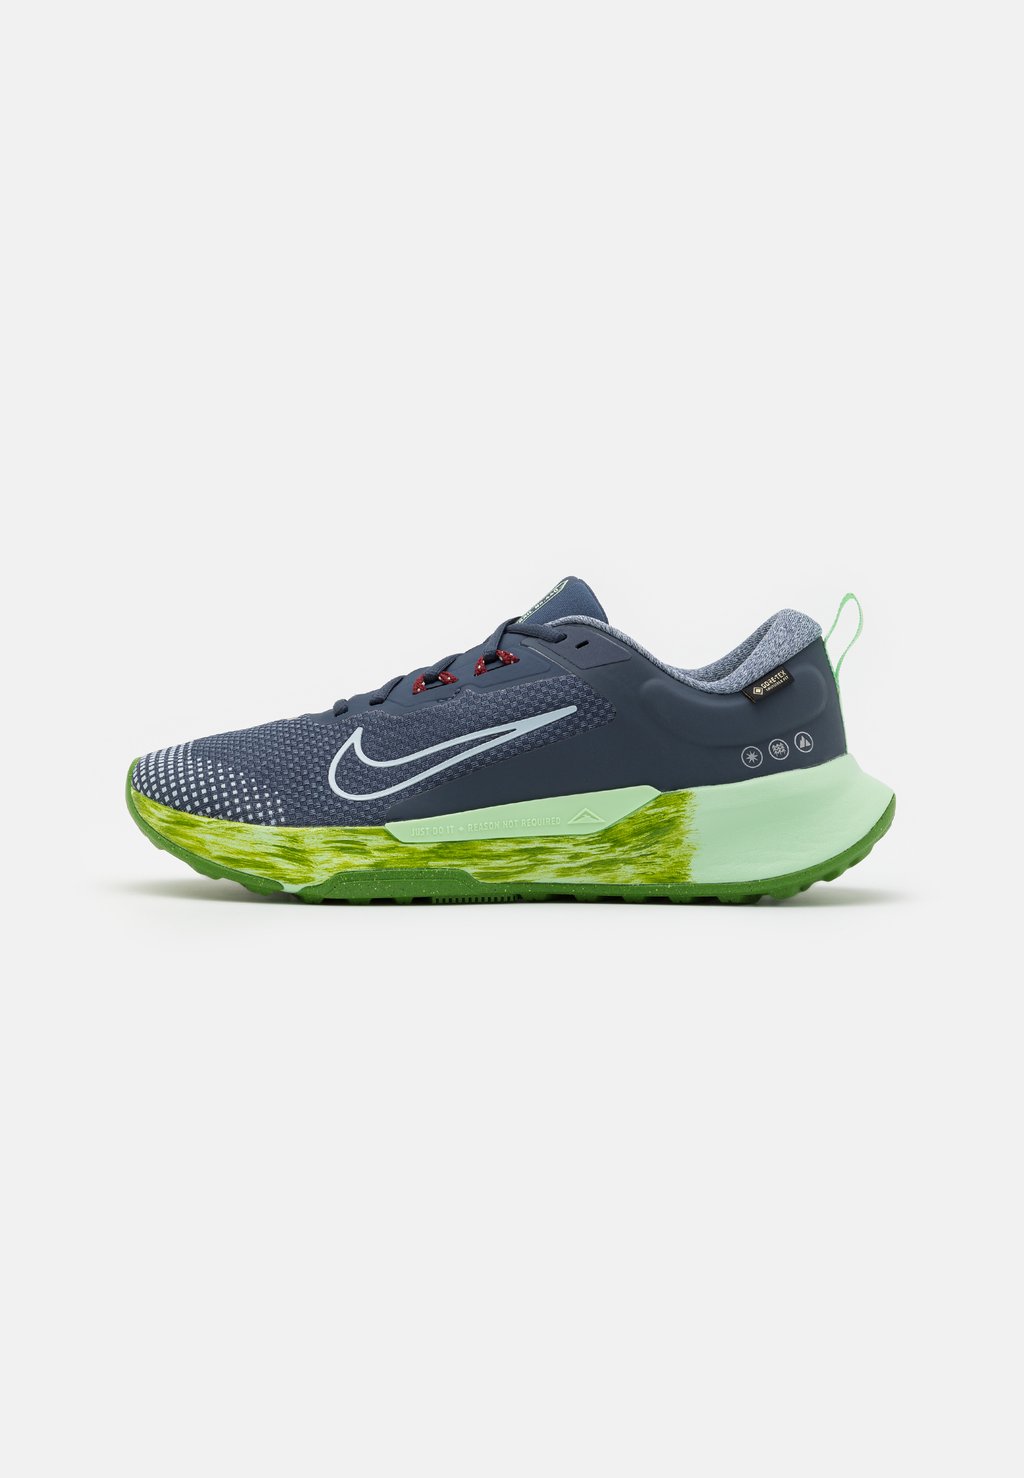 кроссовки для бега по пересеченной местности Juniper Gtx Nike, цвет thunder blue/light armory blue/vapor green/chlorophyll/dark team red